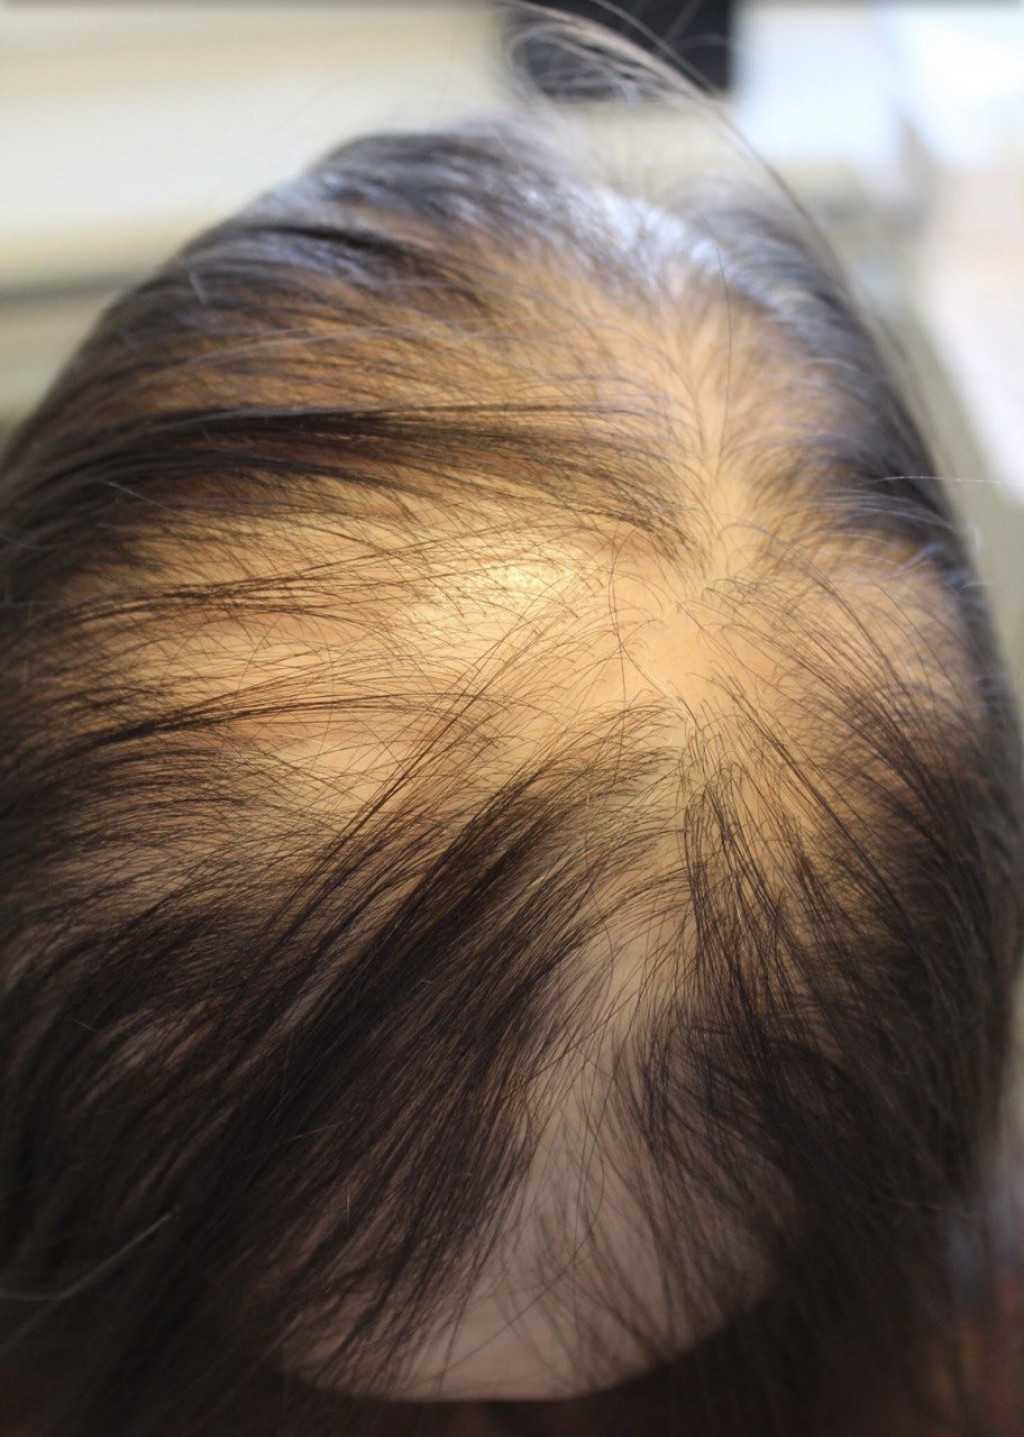 Укрепление корней волос